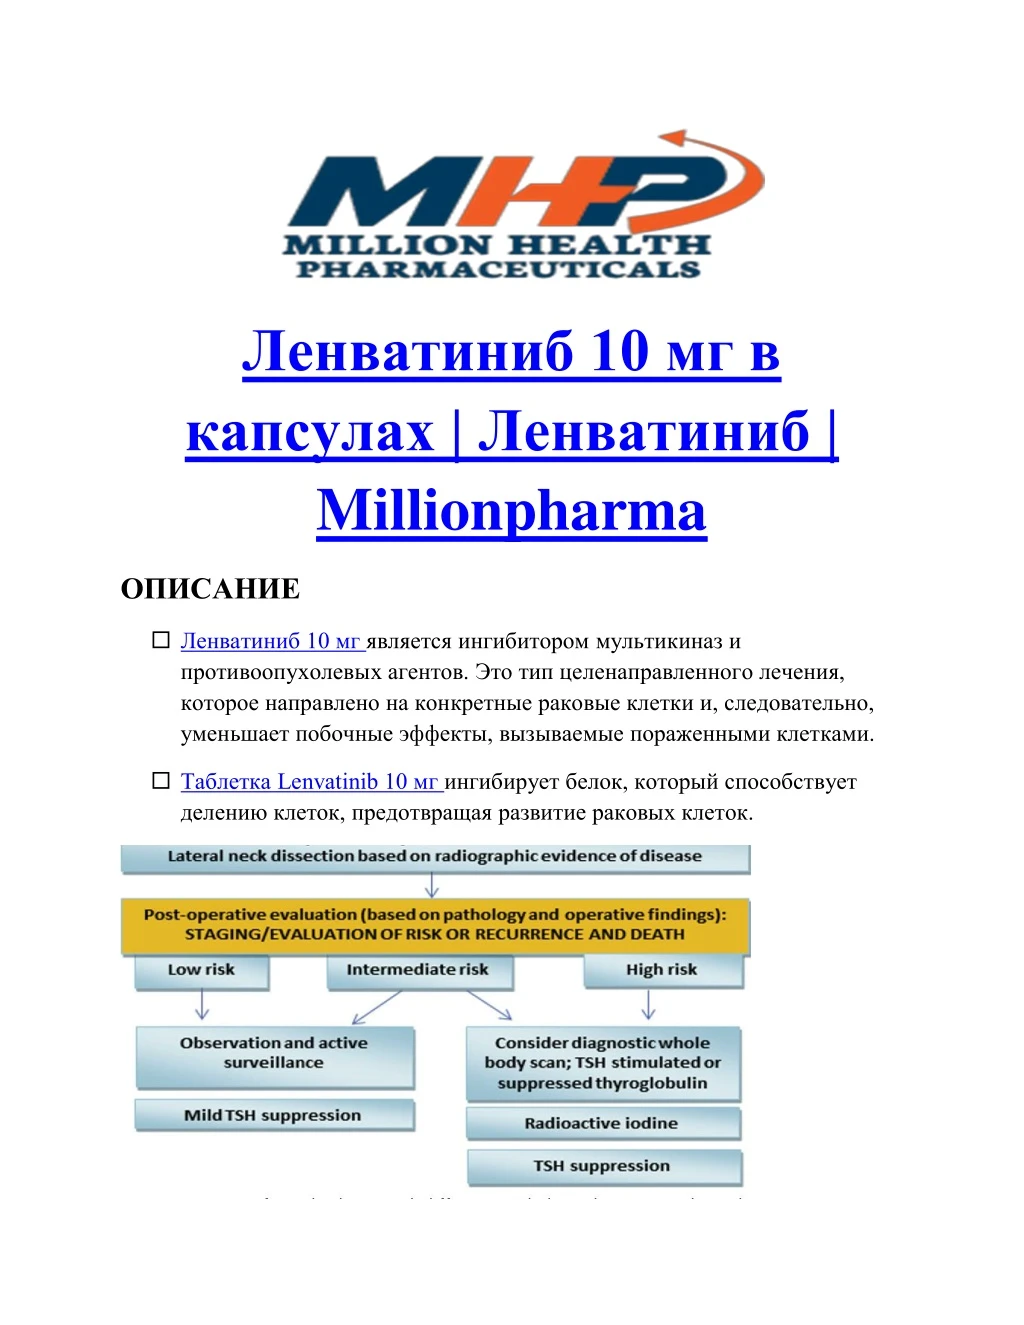 10 millionpharma